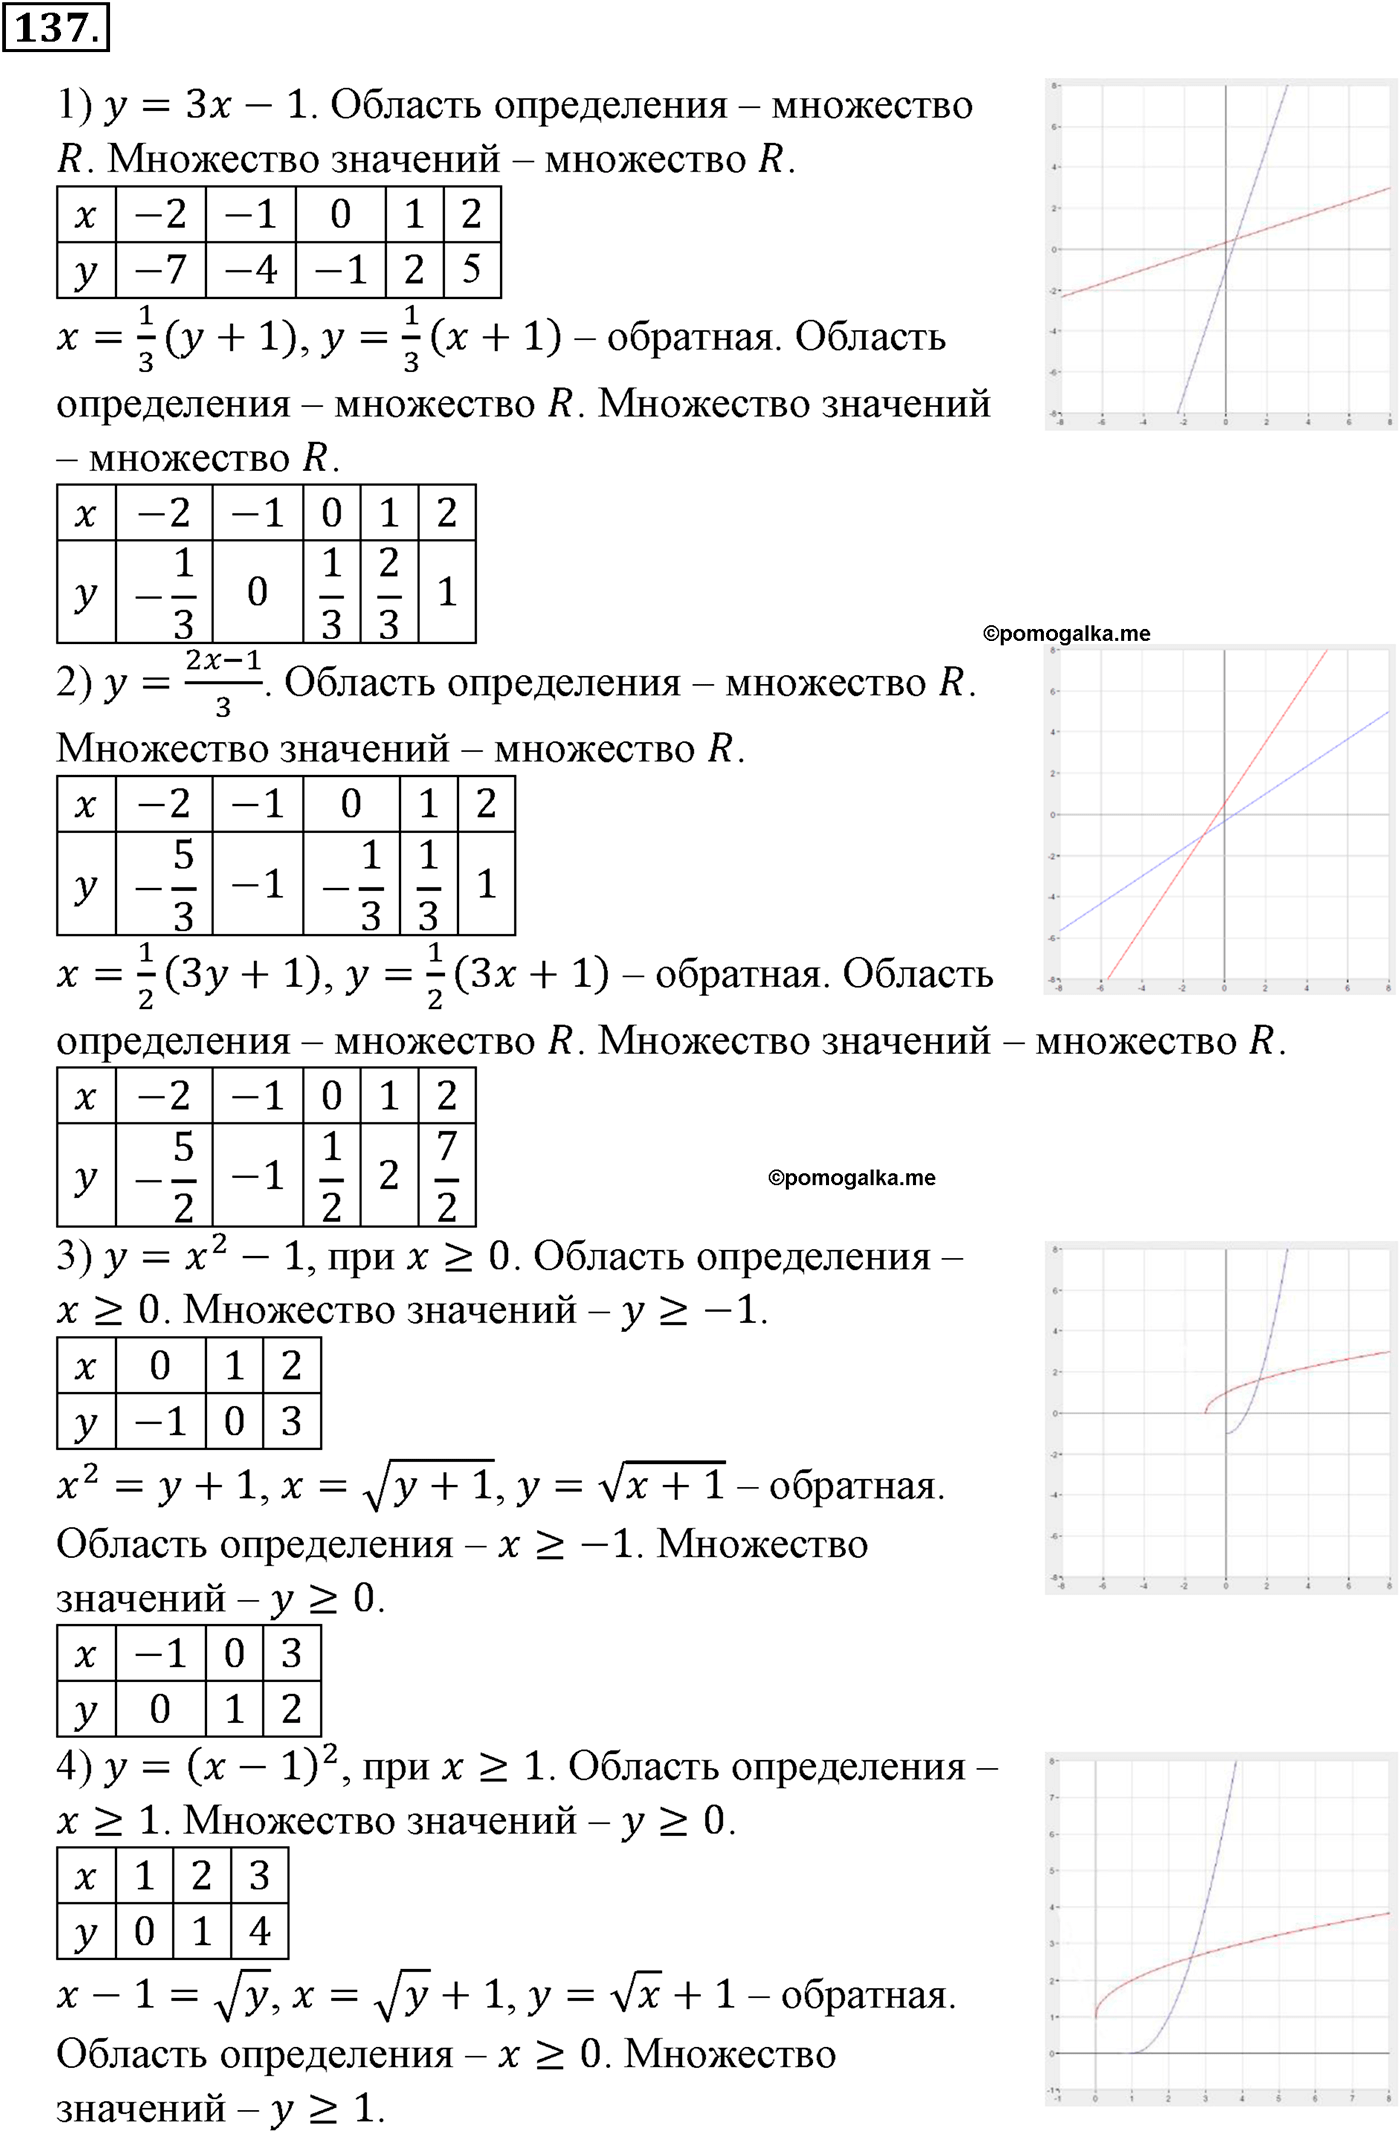 разбор задачи №137 по алгебре за 10-11 класс из учебника Алимова, Колягина